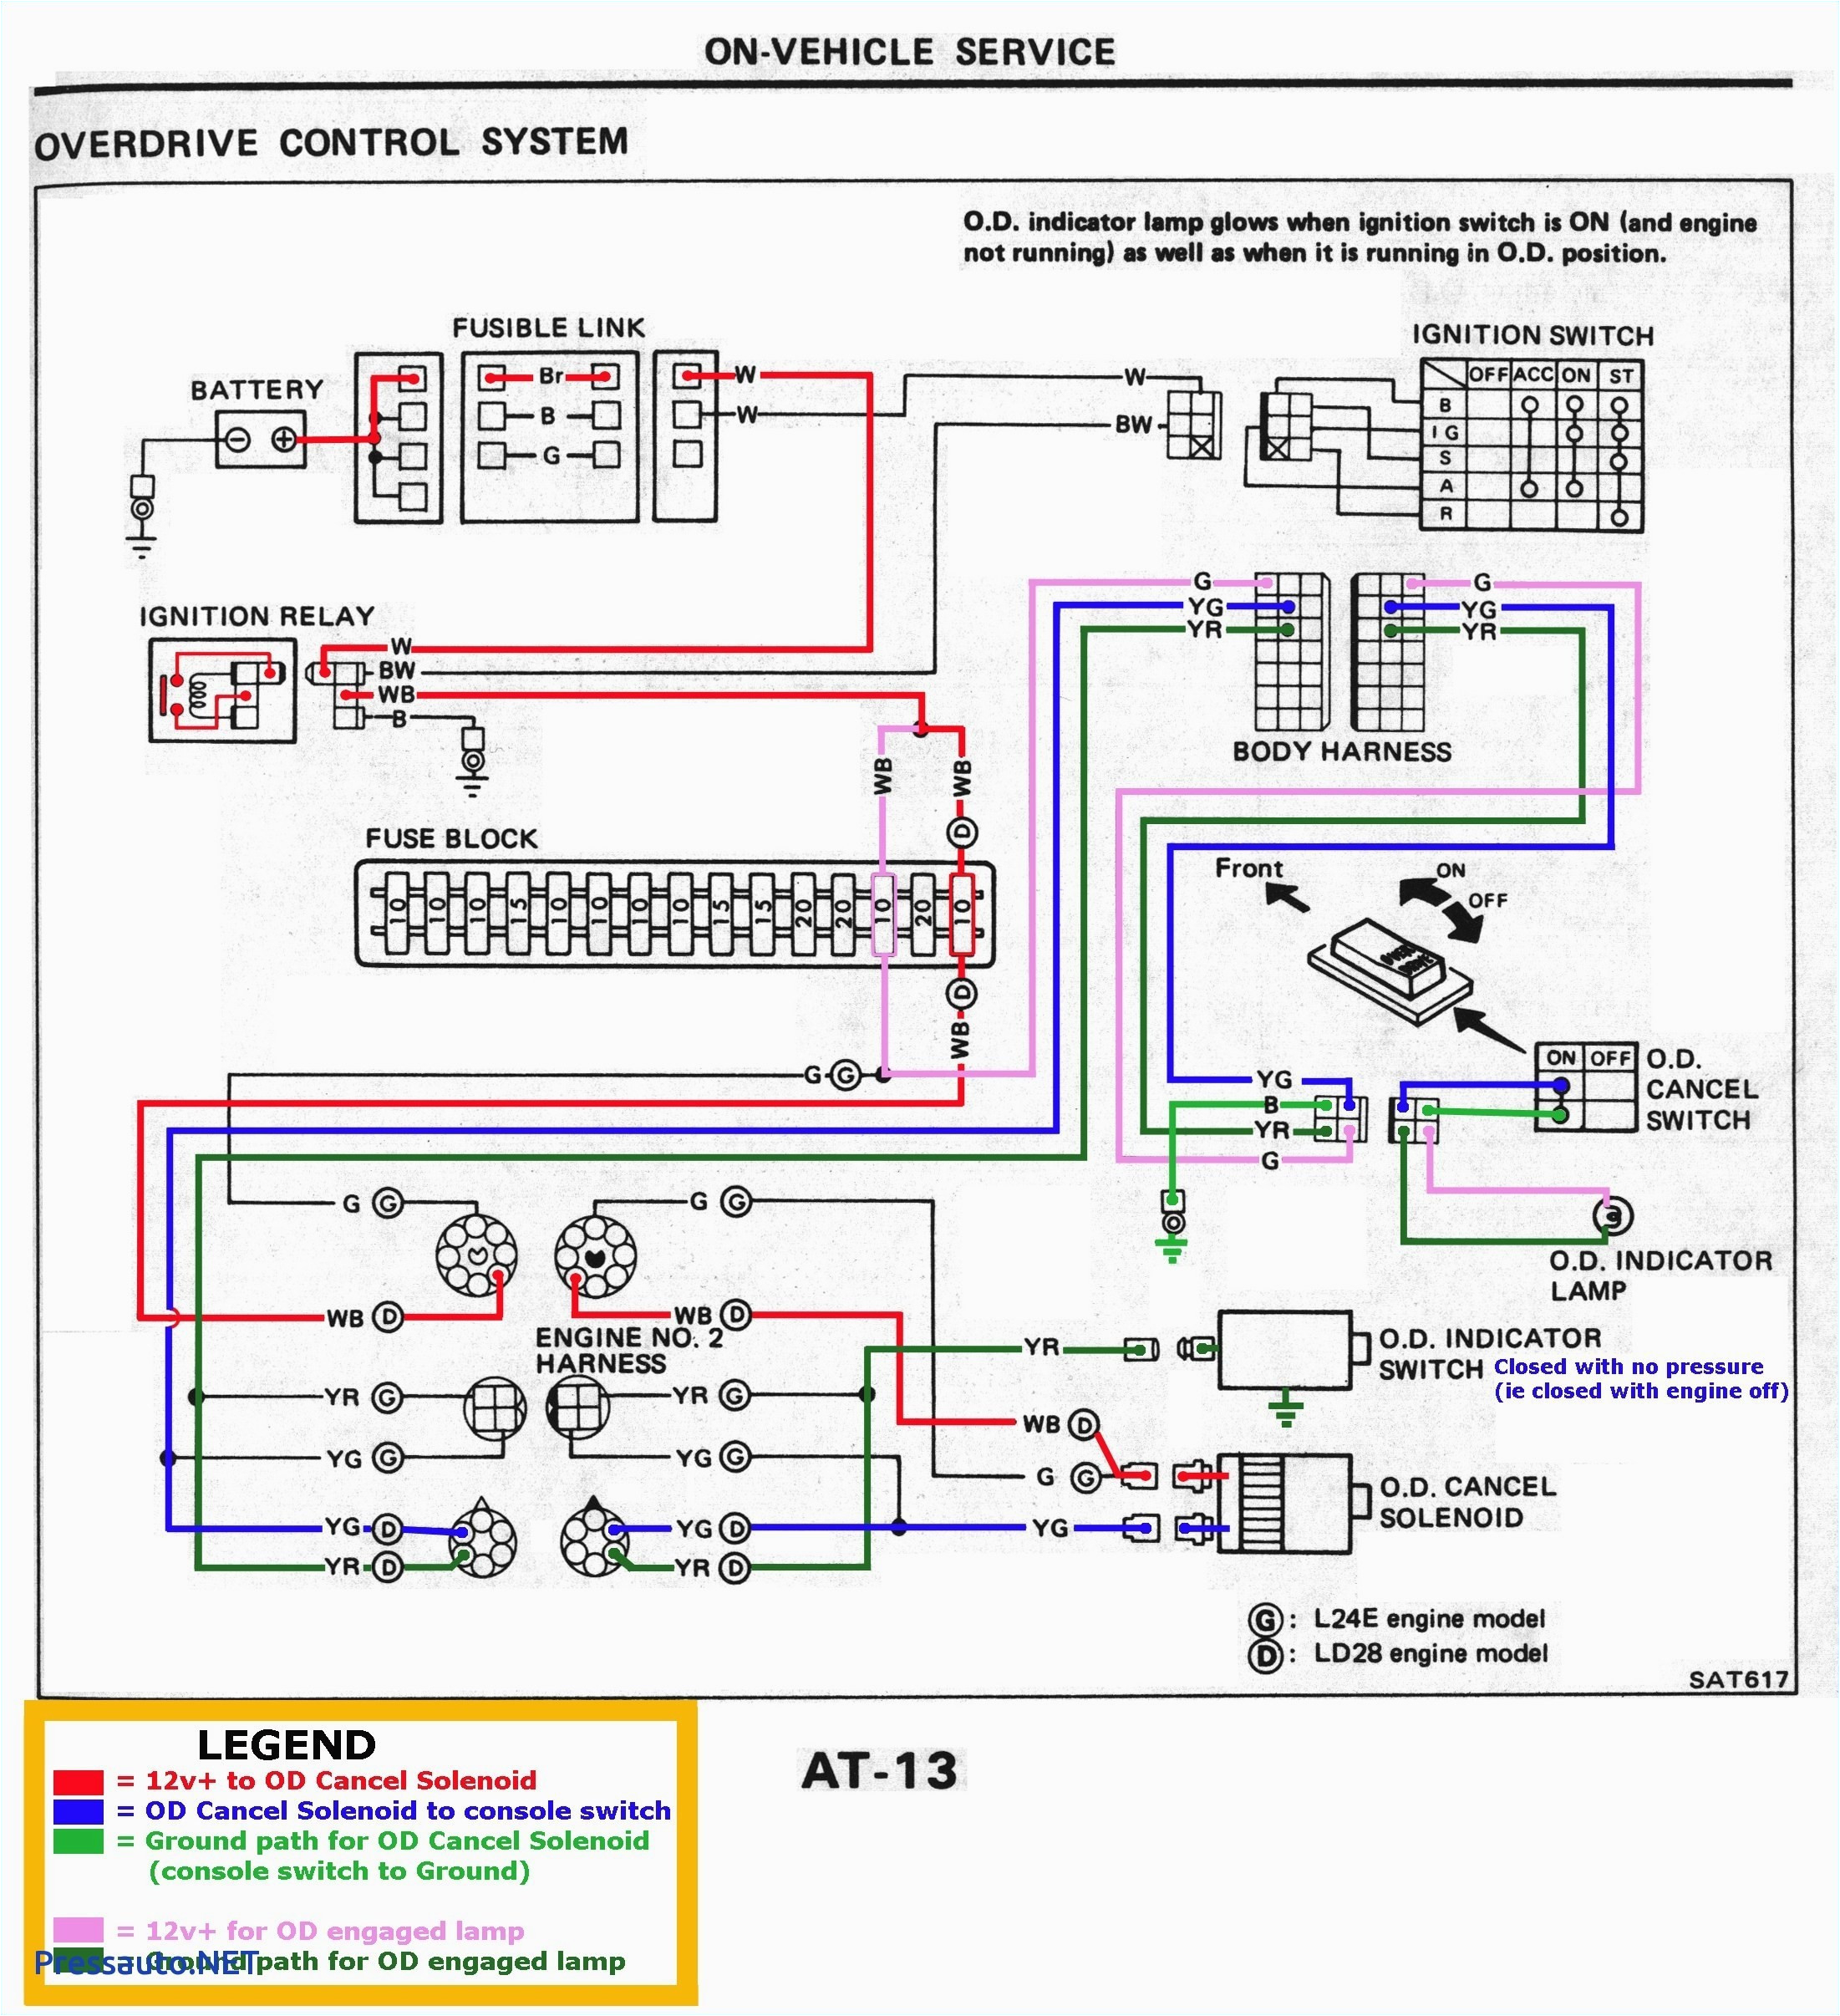 kia alternator wiring database wiring diagram kia sedona alternator wiring diagram